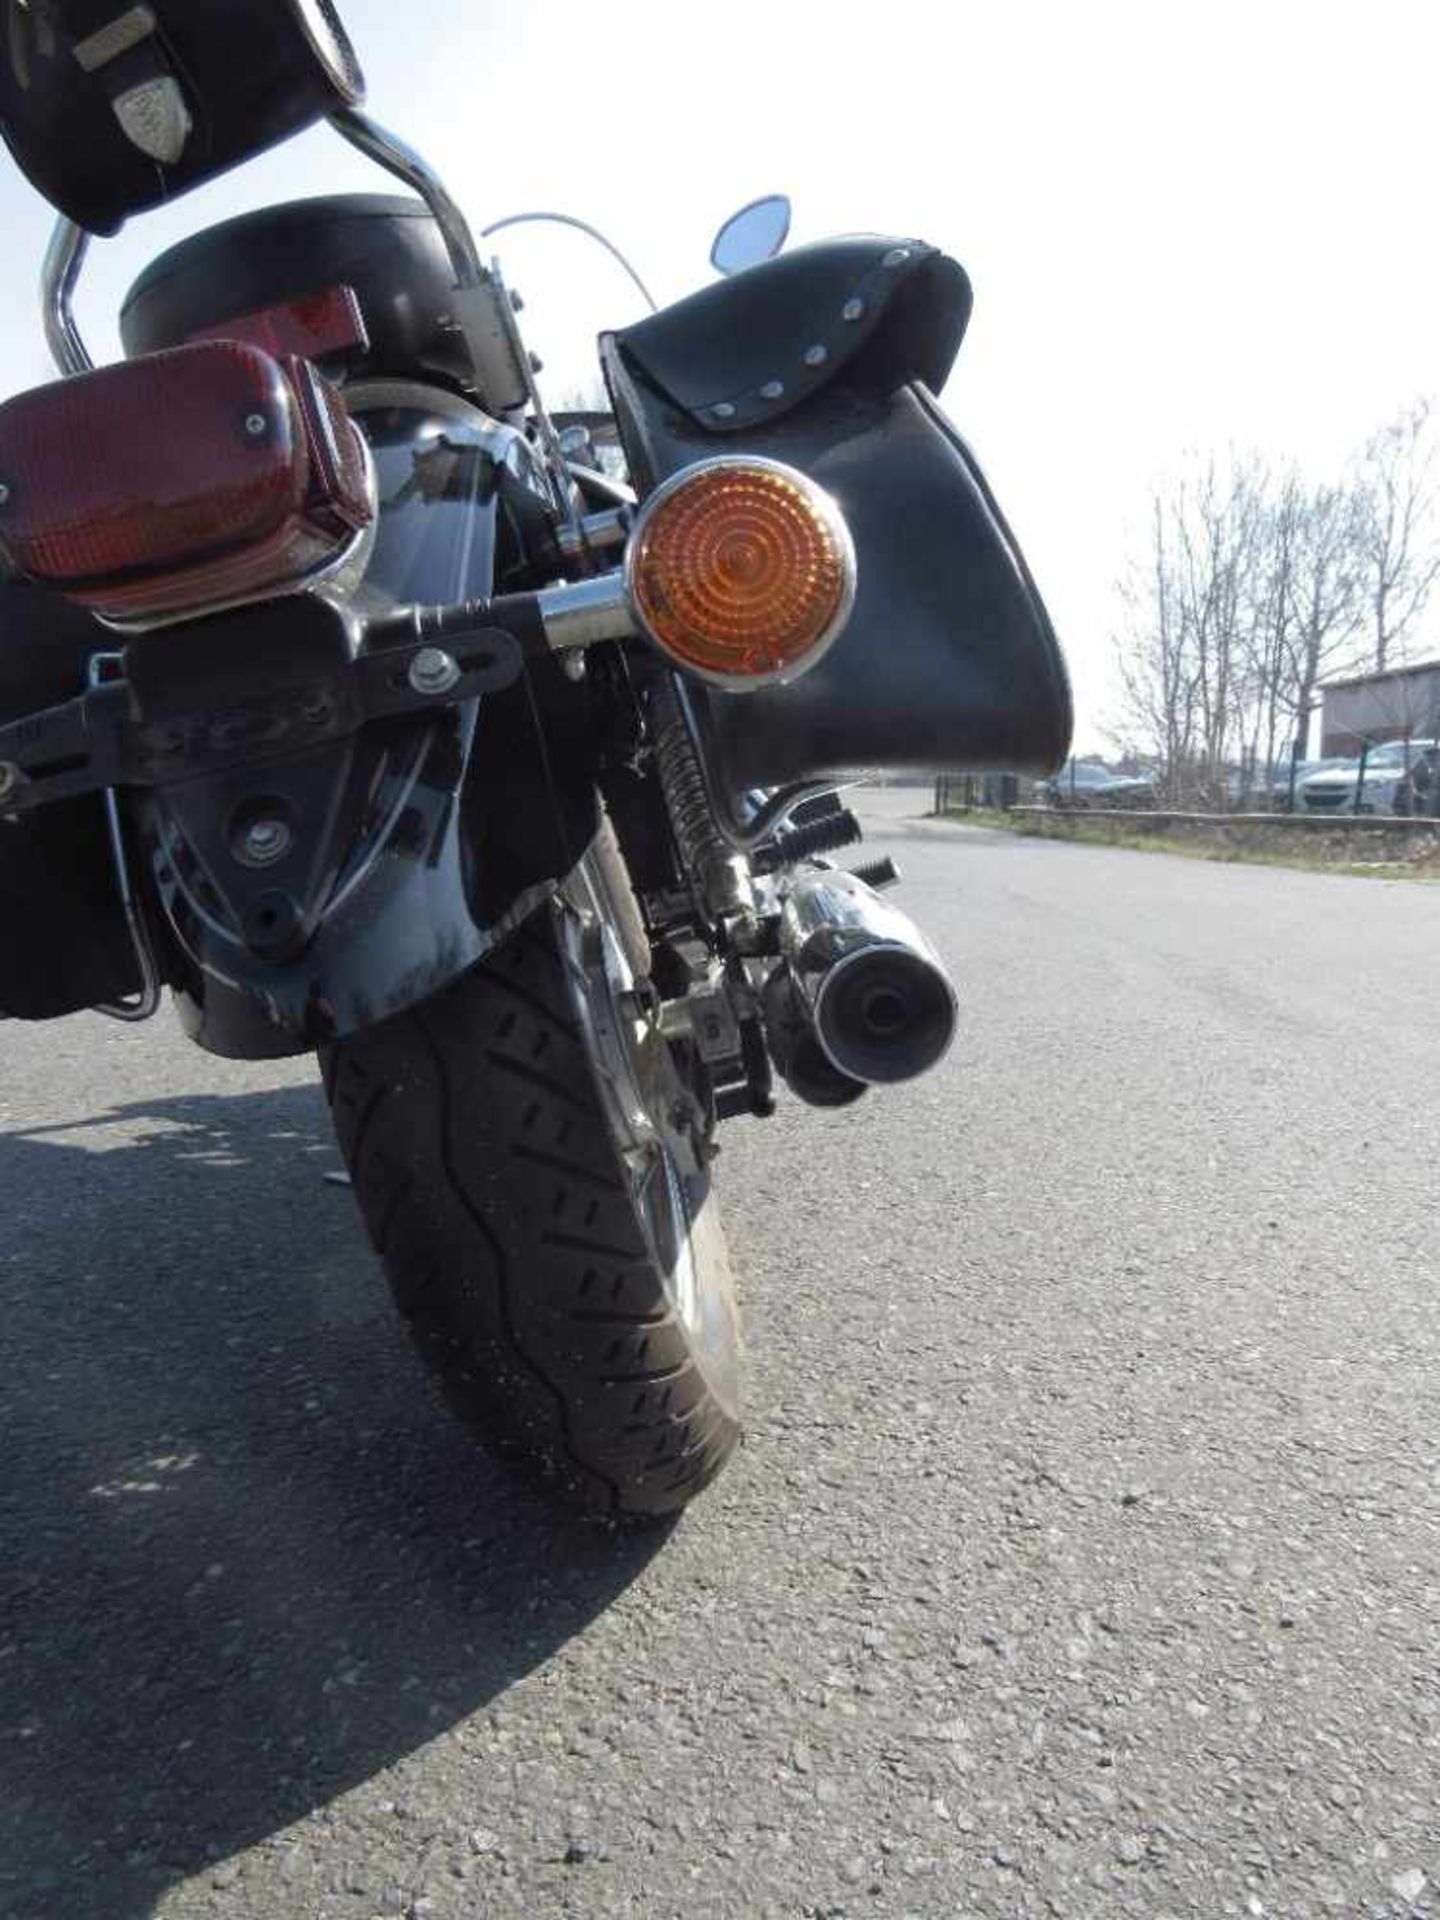 Yamaha Motorrad XVS125H guter Zustand läuft Batterie muss erneuert werden stand 2 jahre - Bild 11 aus 25